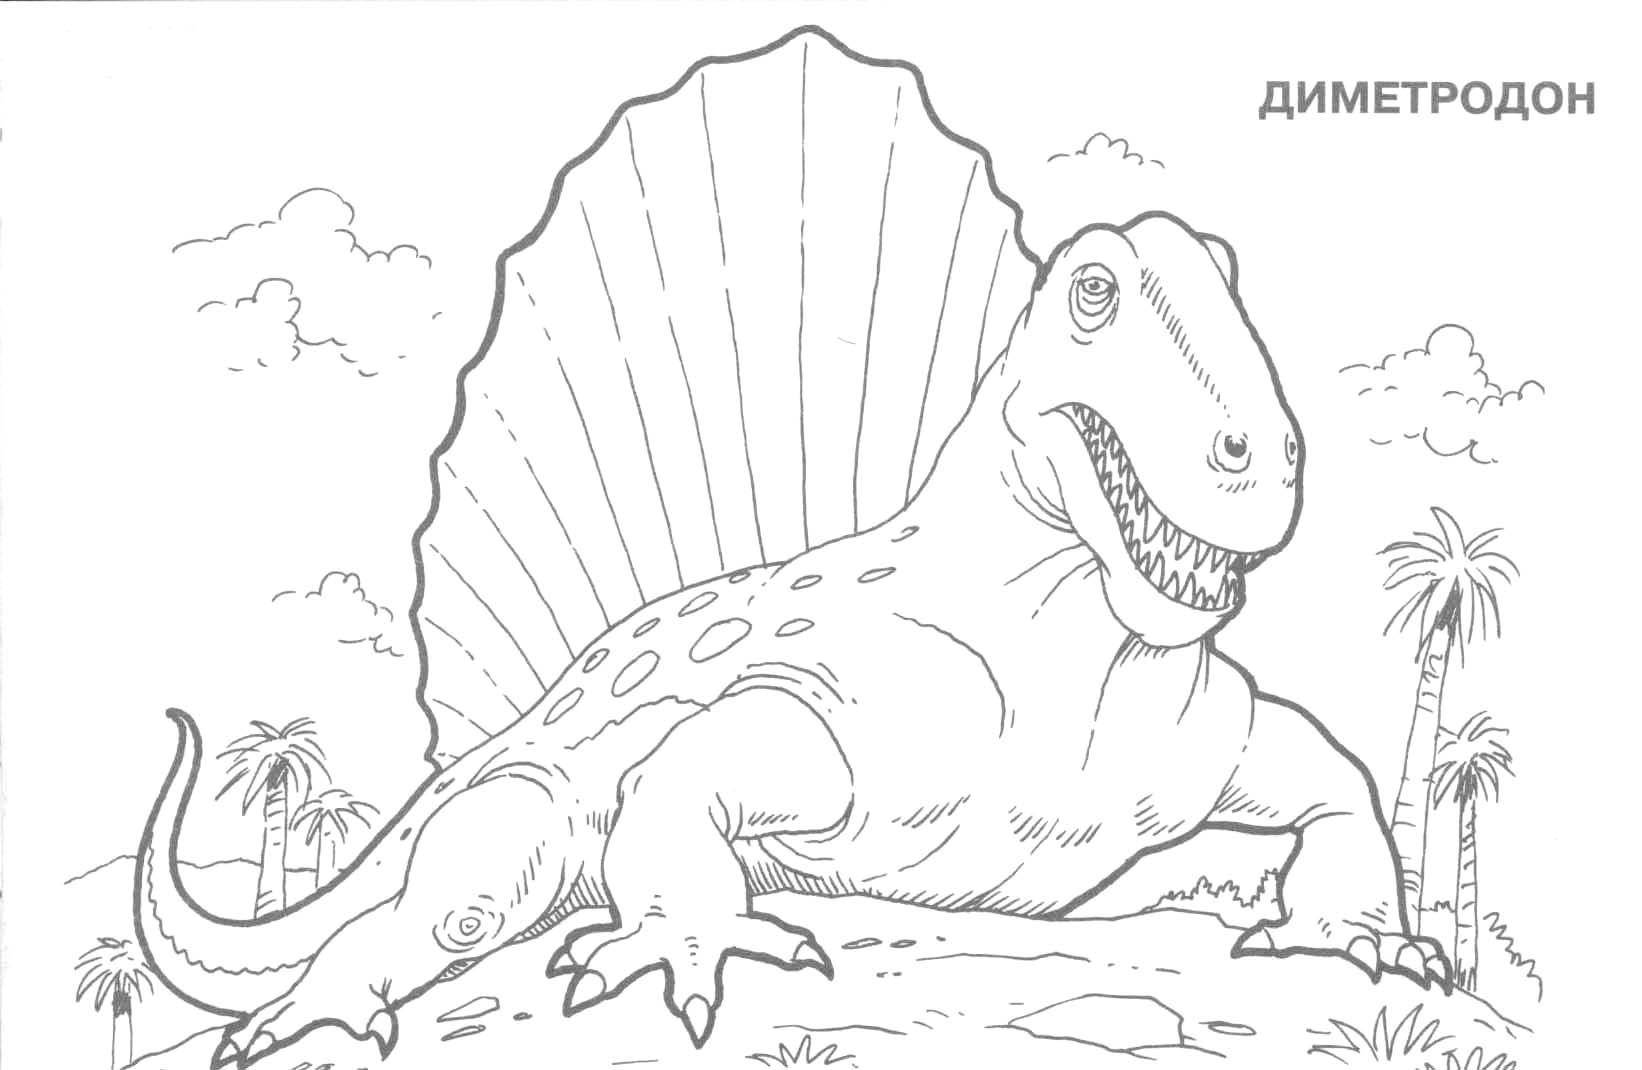   Динозавр диметродон